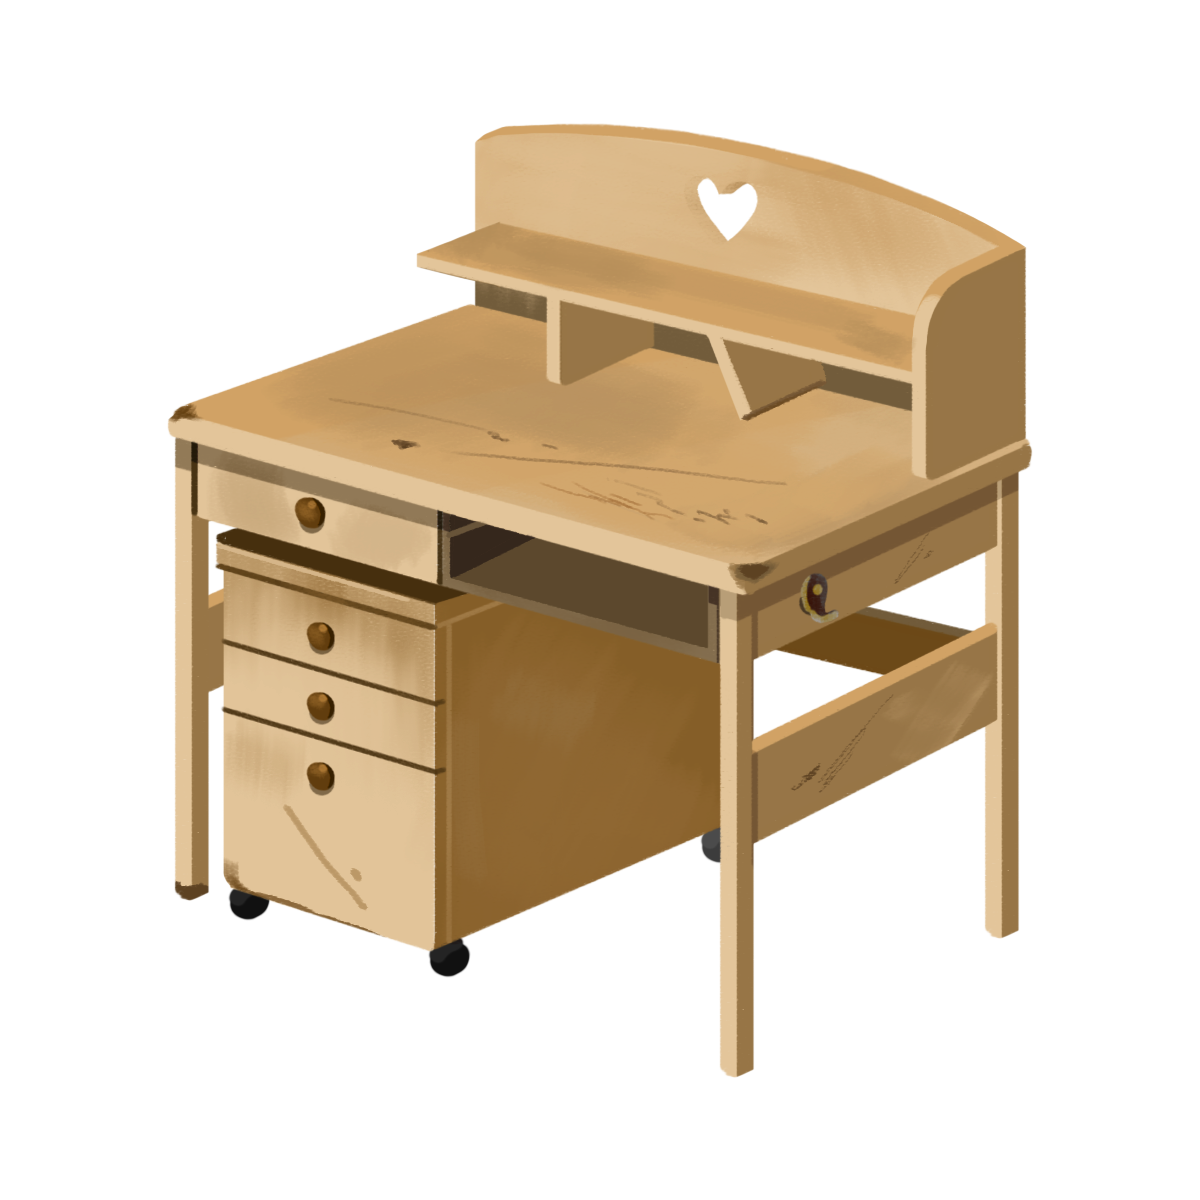 壊れた木製の学習机のイラスト エコのモト